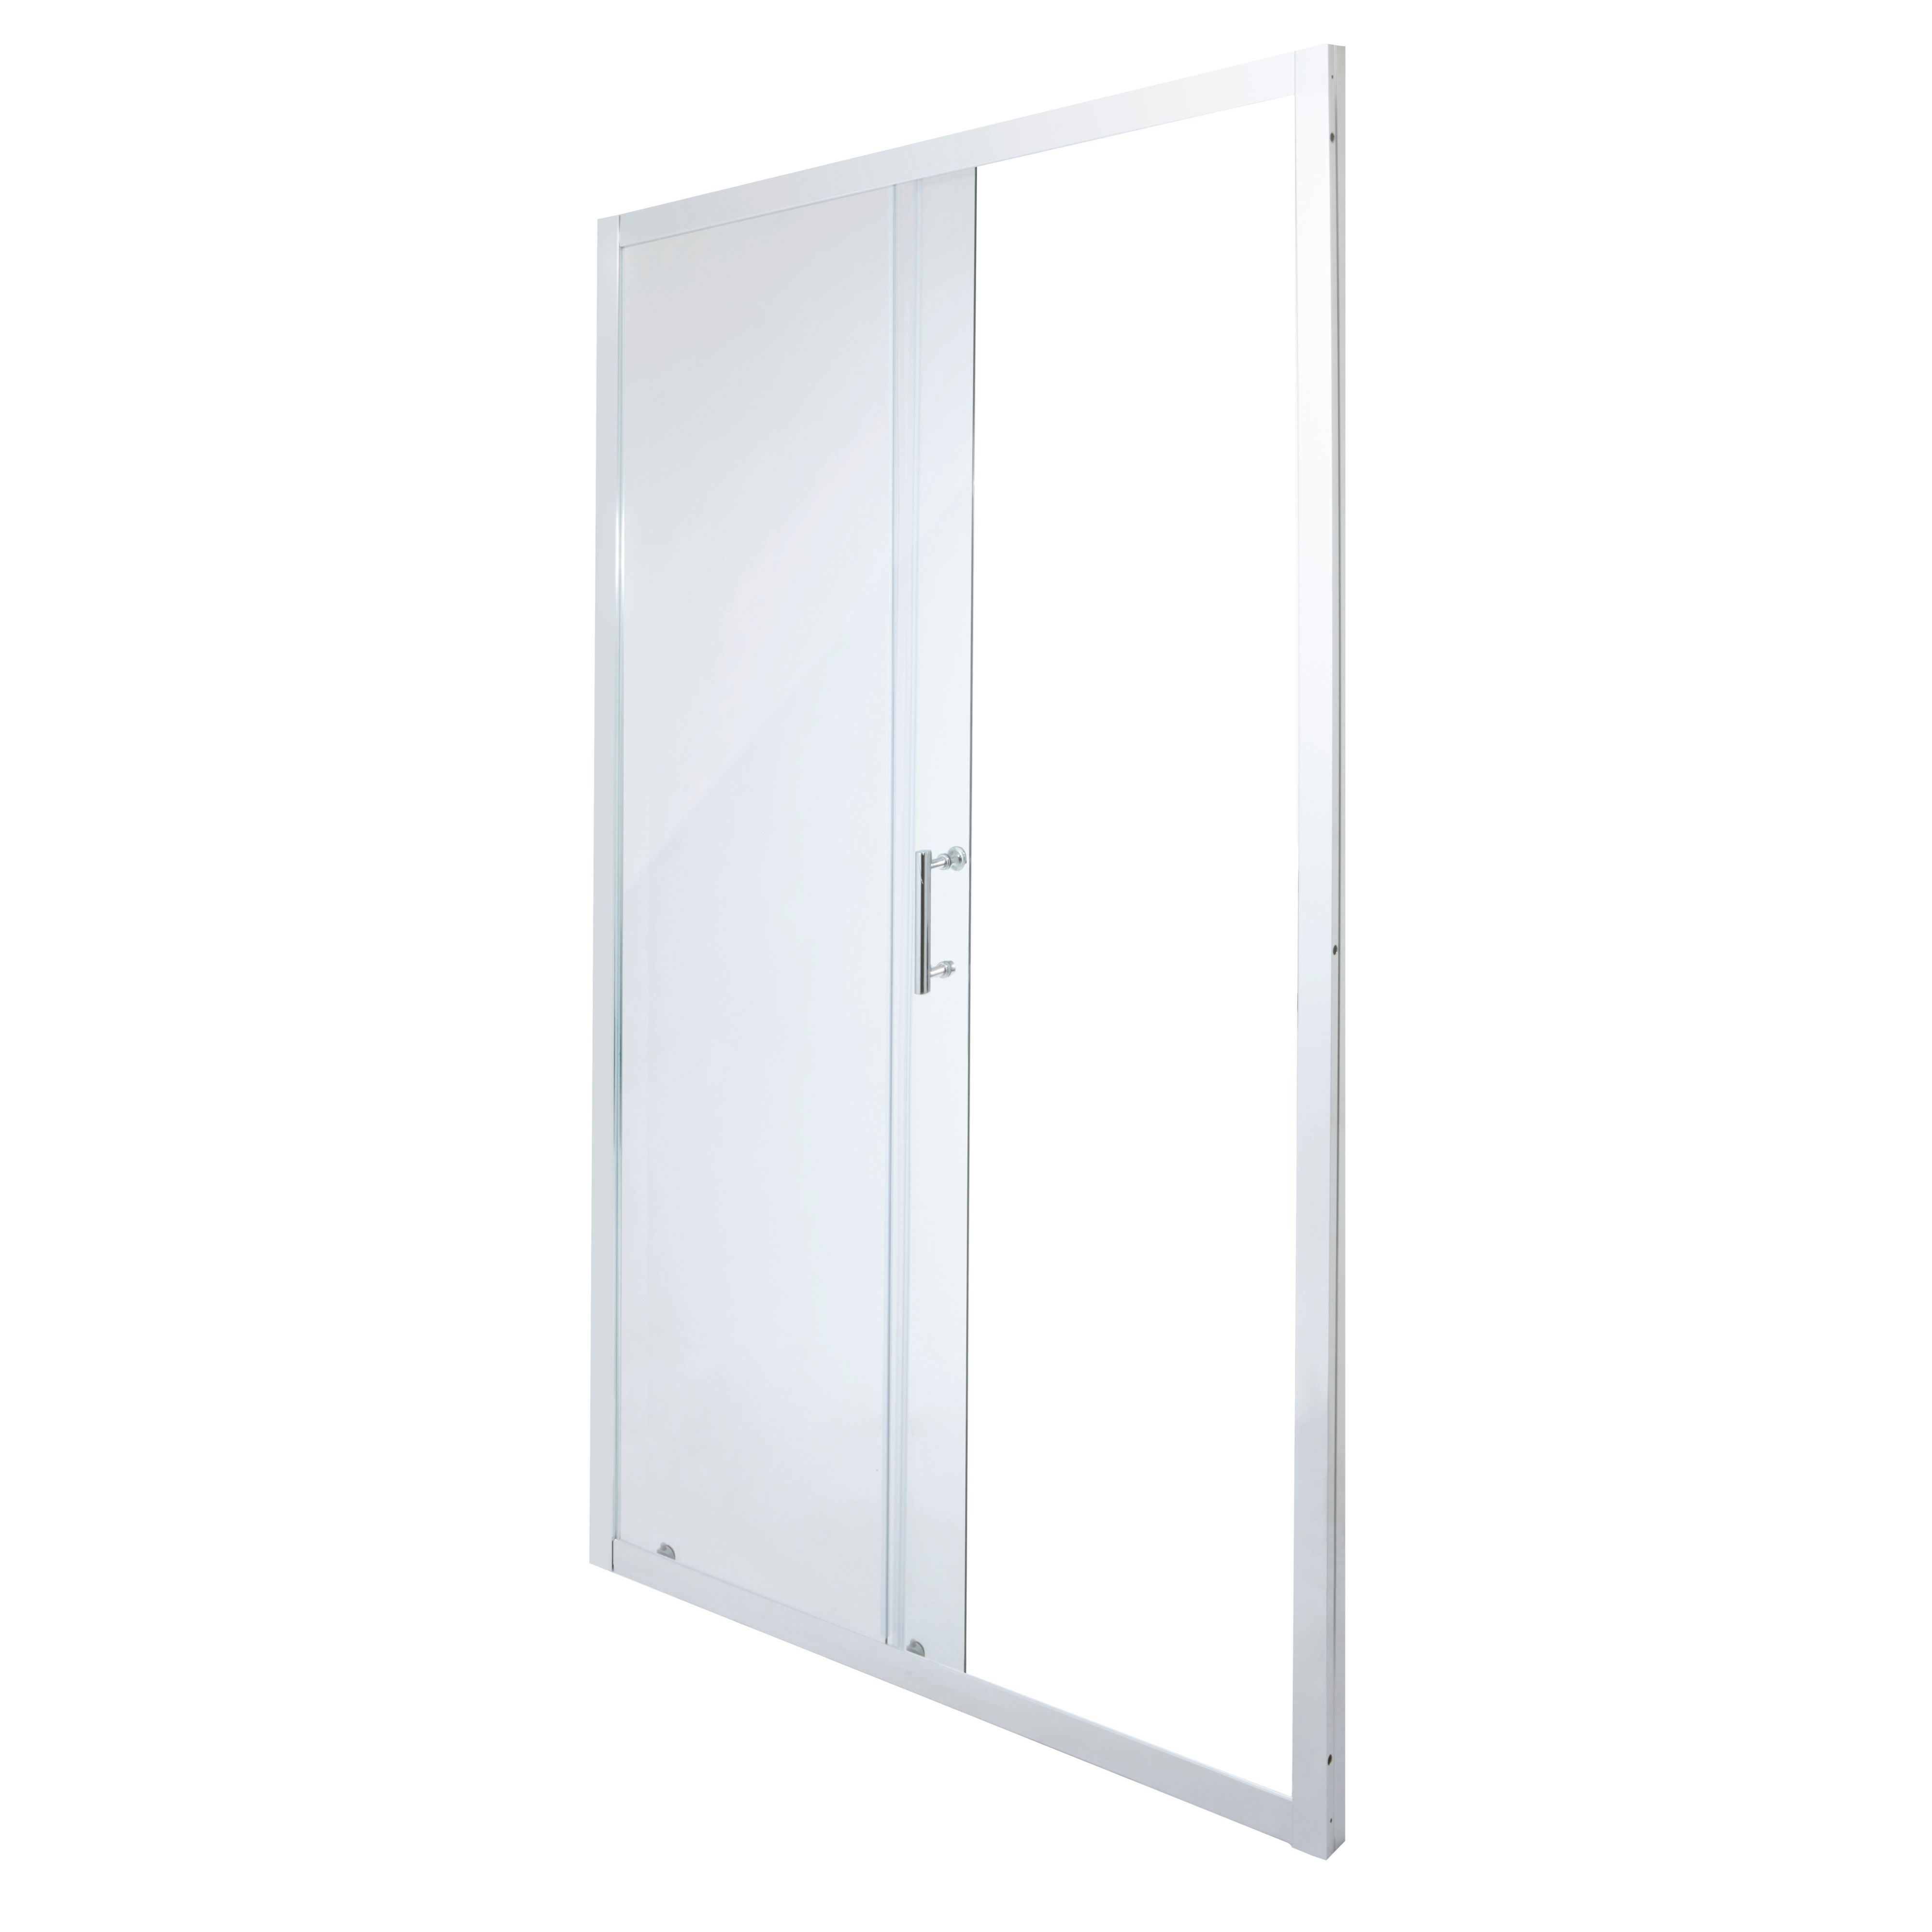 Cooke & Lewis Onega Argenté Silver effect Clear Sliding Shower Door (H)190cm (W)120cm